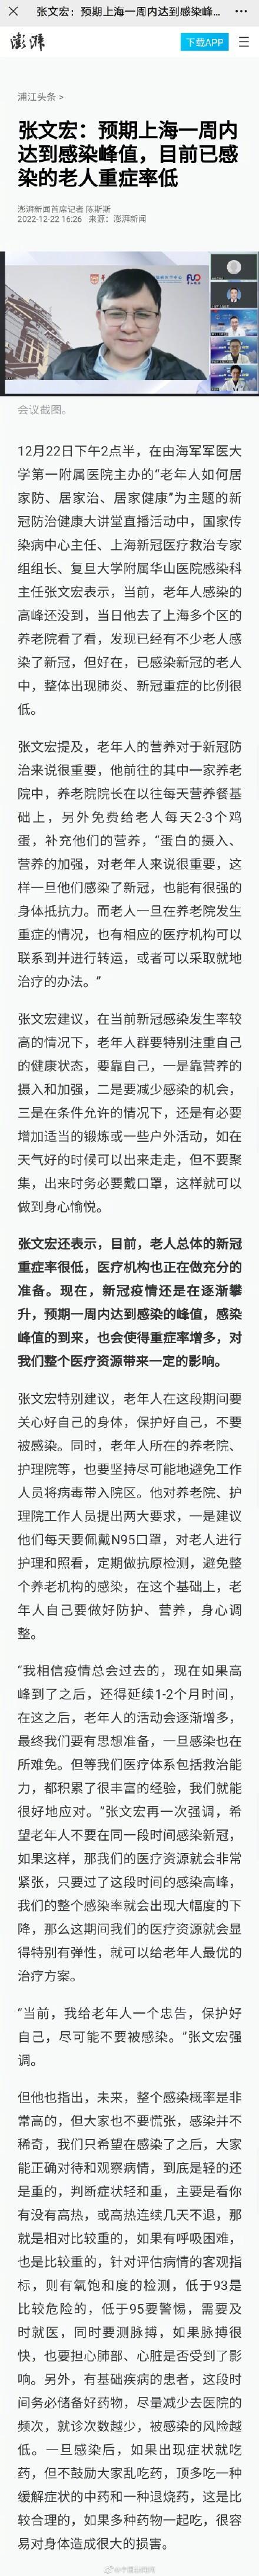 张文宏：上海感染人数是千万级别,究竟是怎么一回事?